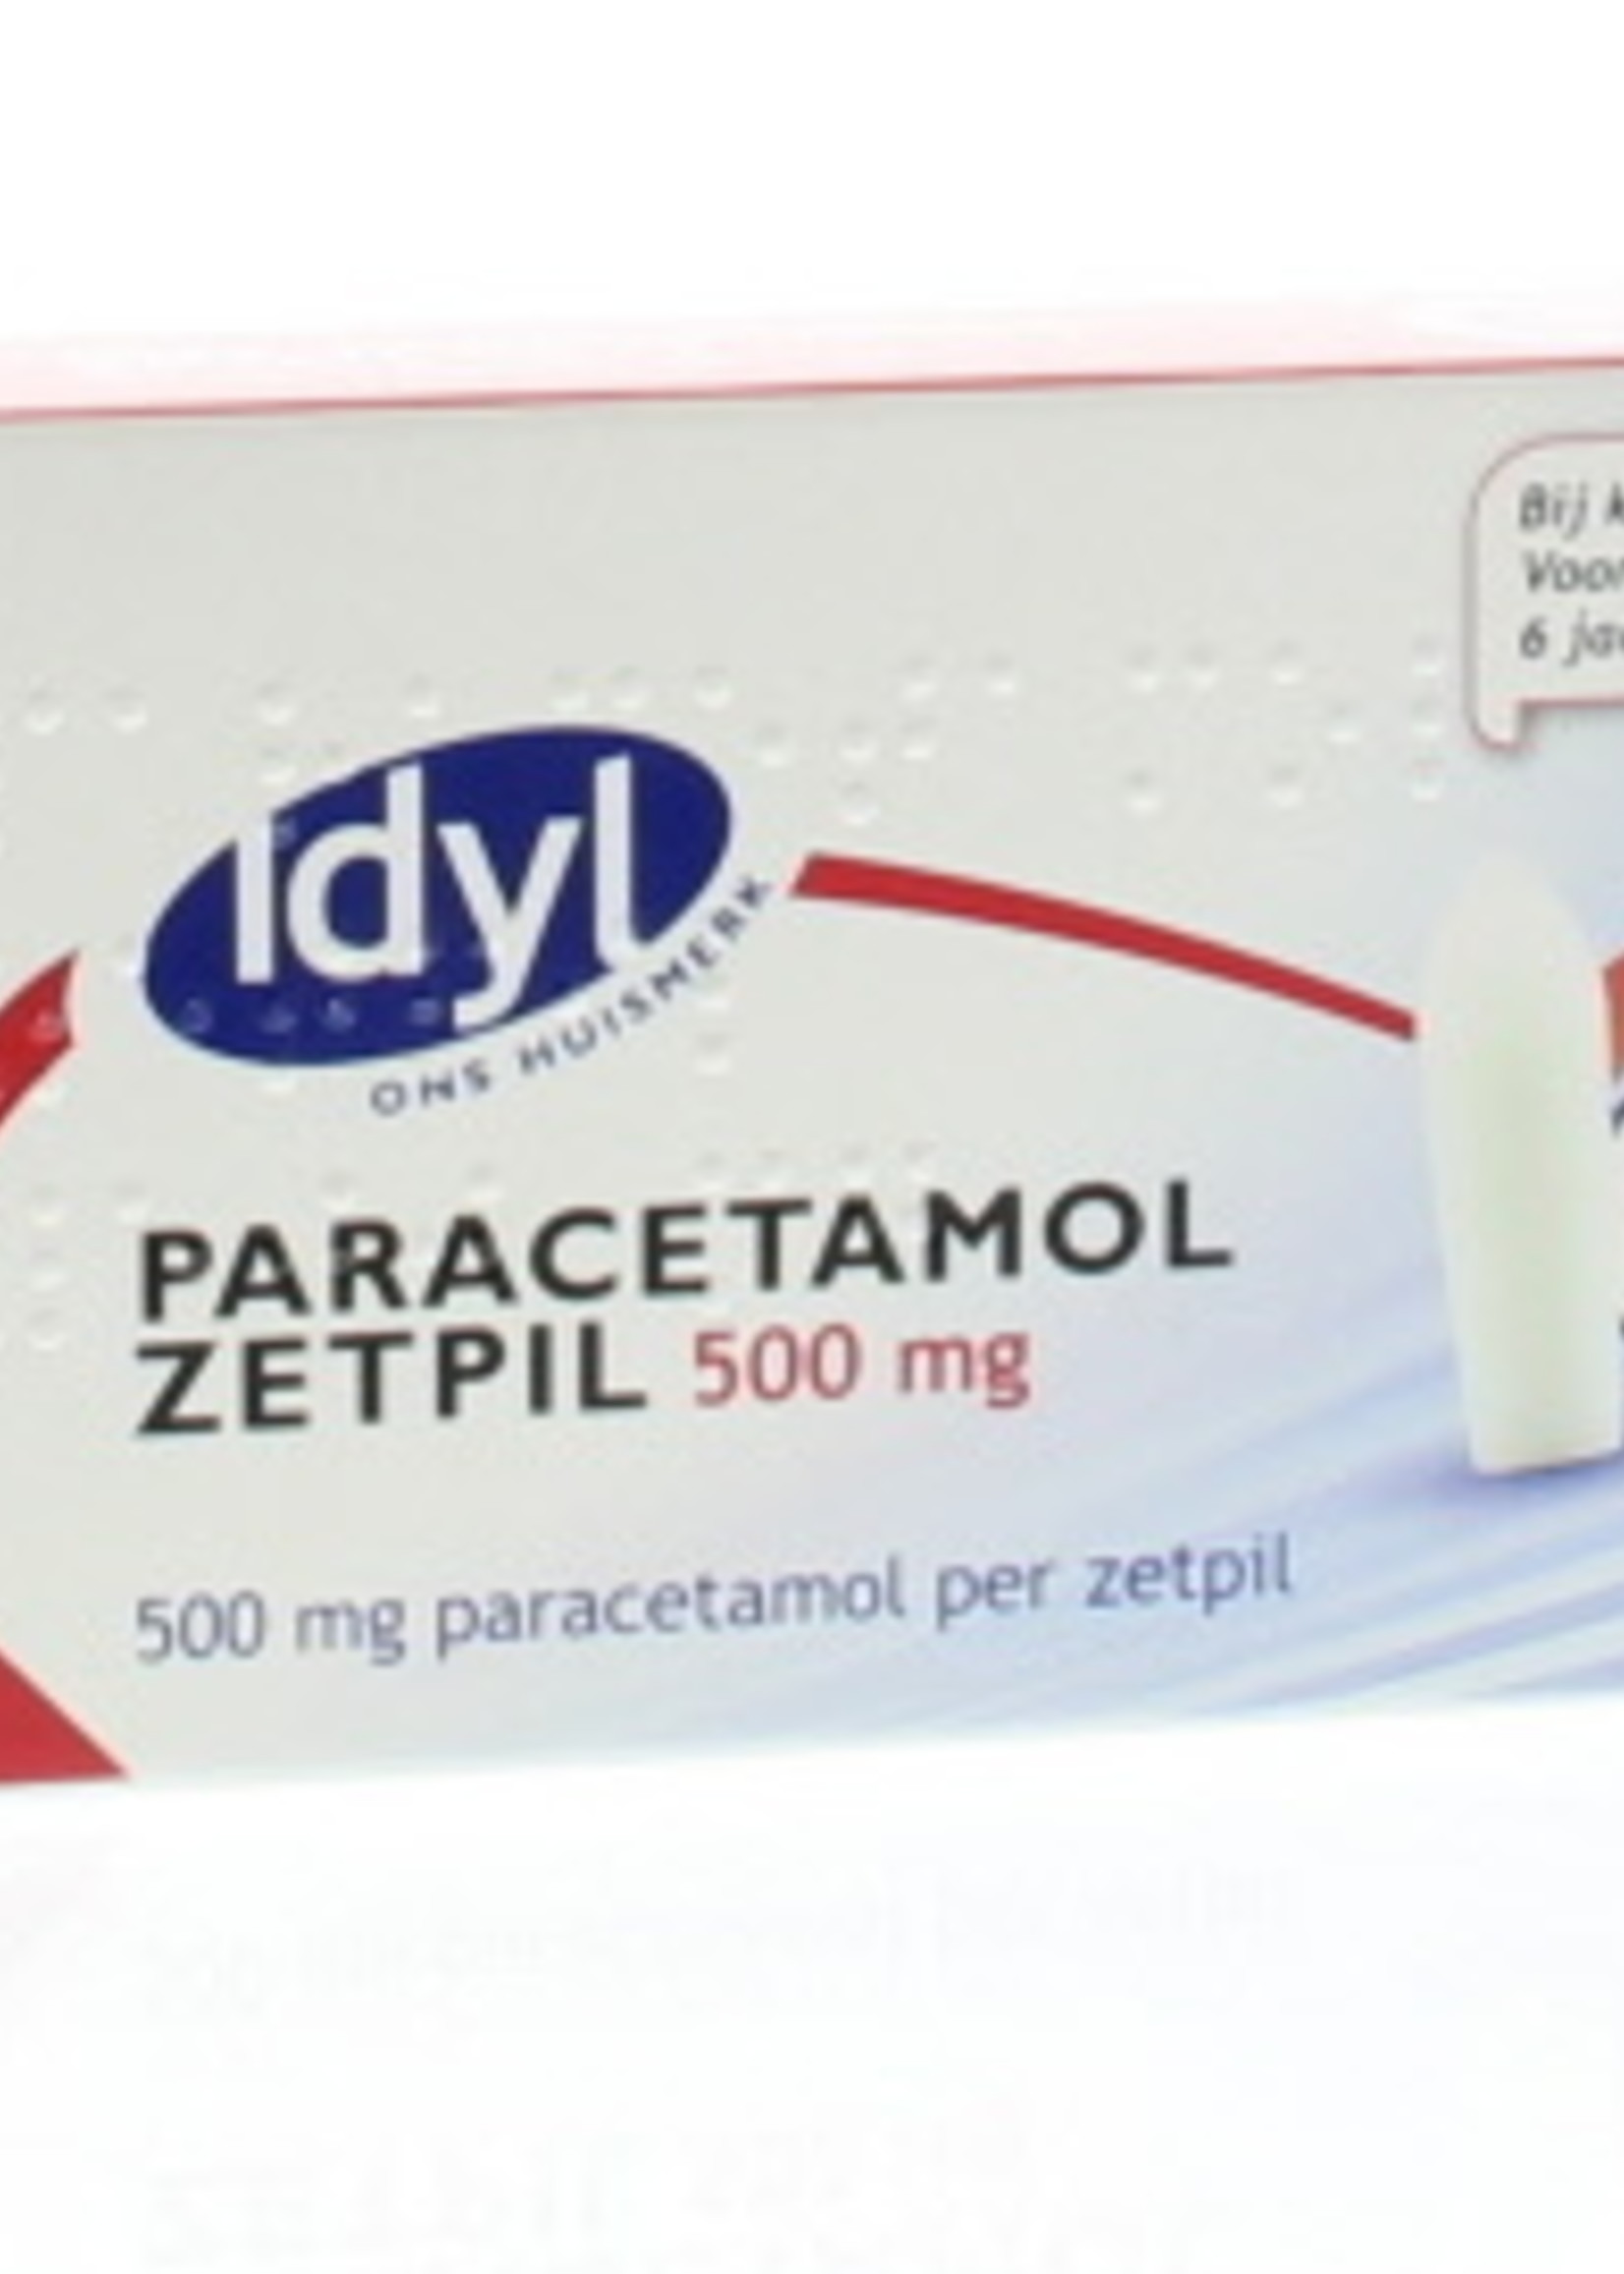 IDYL Paracetamol zetpil 500 mg, 10 zetpillen